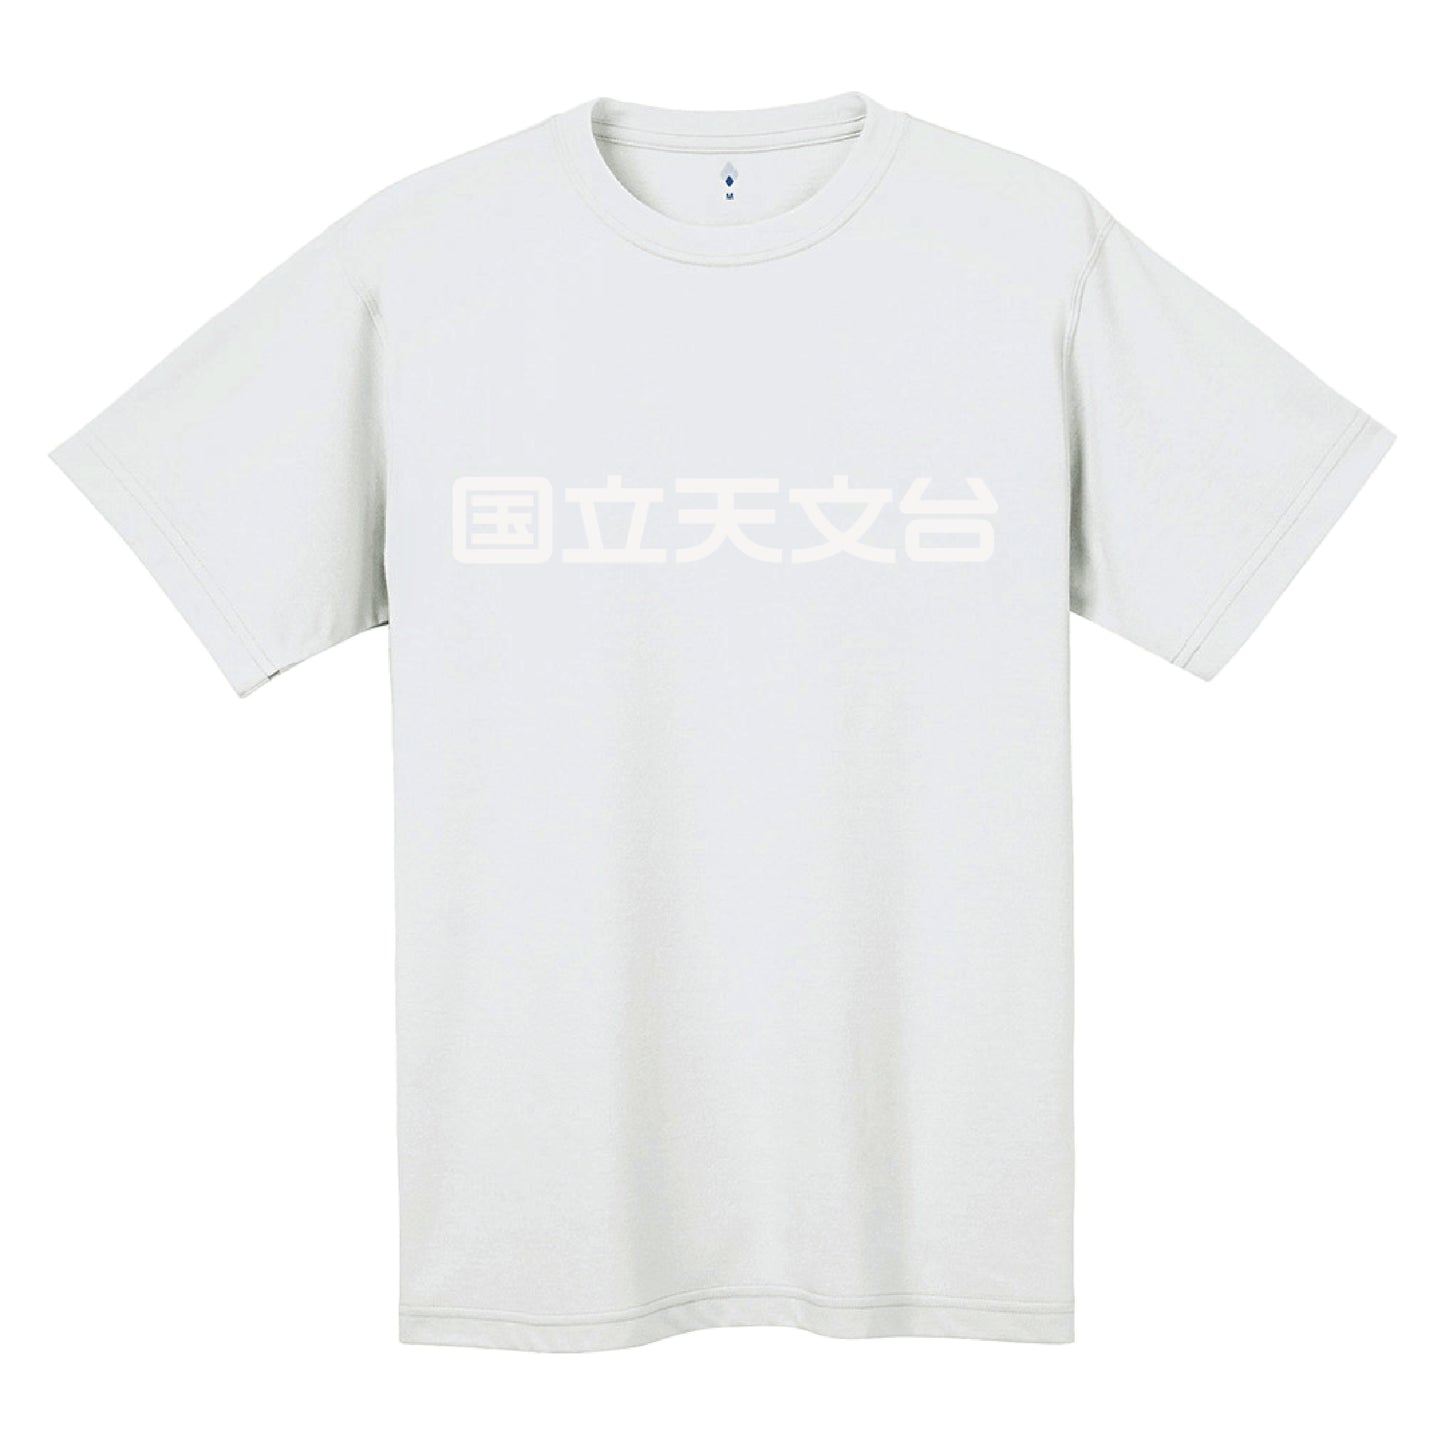 国立天文台 NAOJ漢字 ロゴマーク WIC. Tシャツ ホワイト x ホワイト S 00